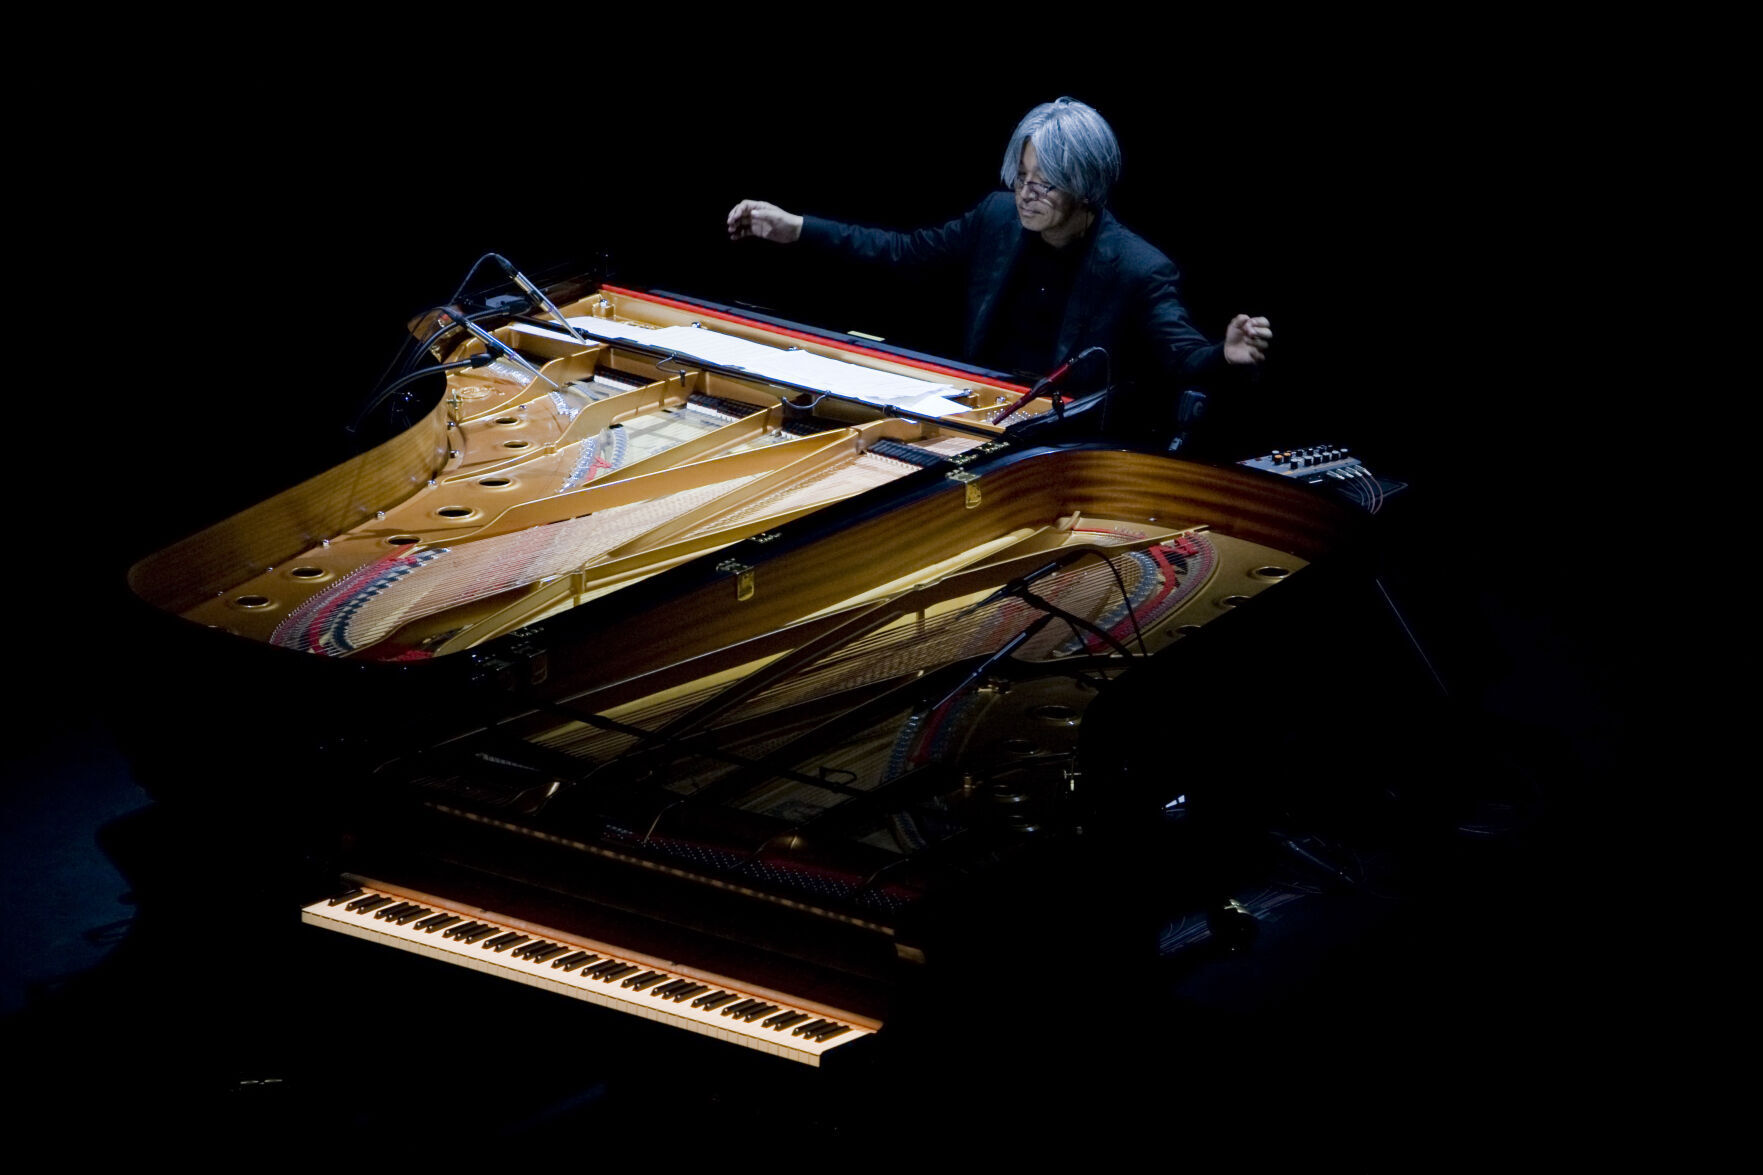 Japanese musician Sakamoto dies at 71